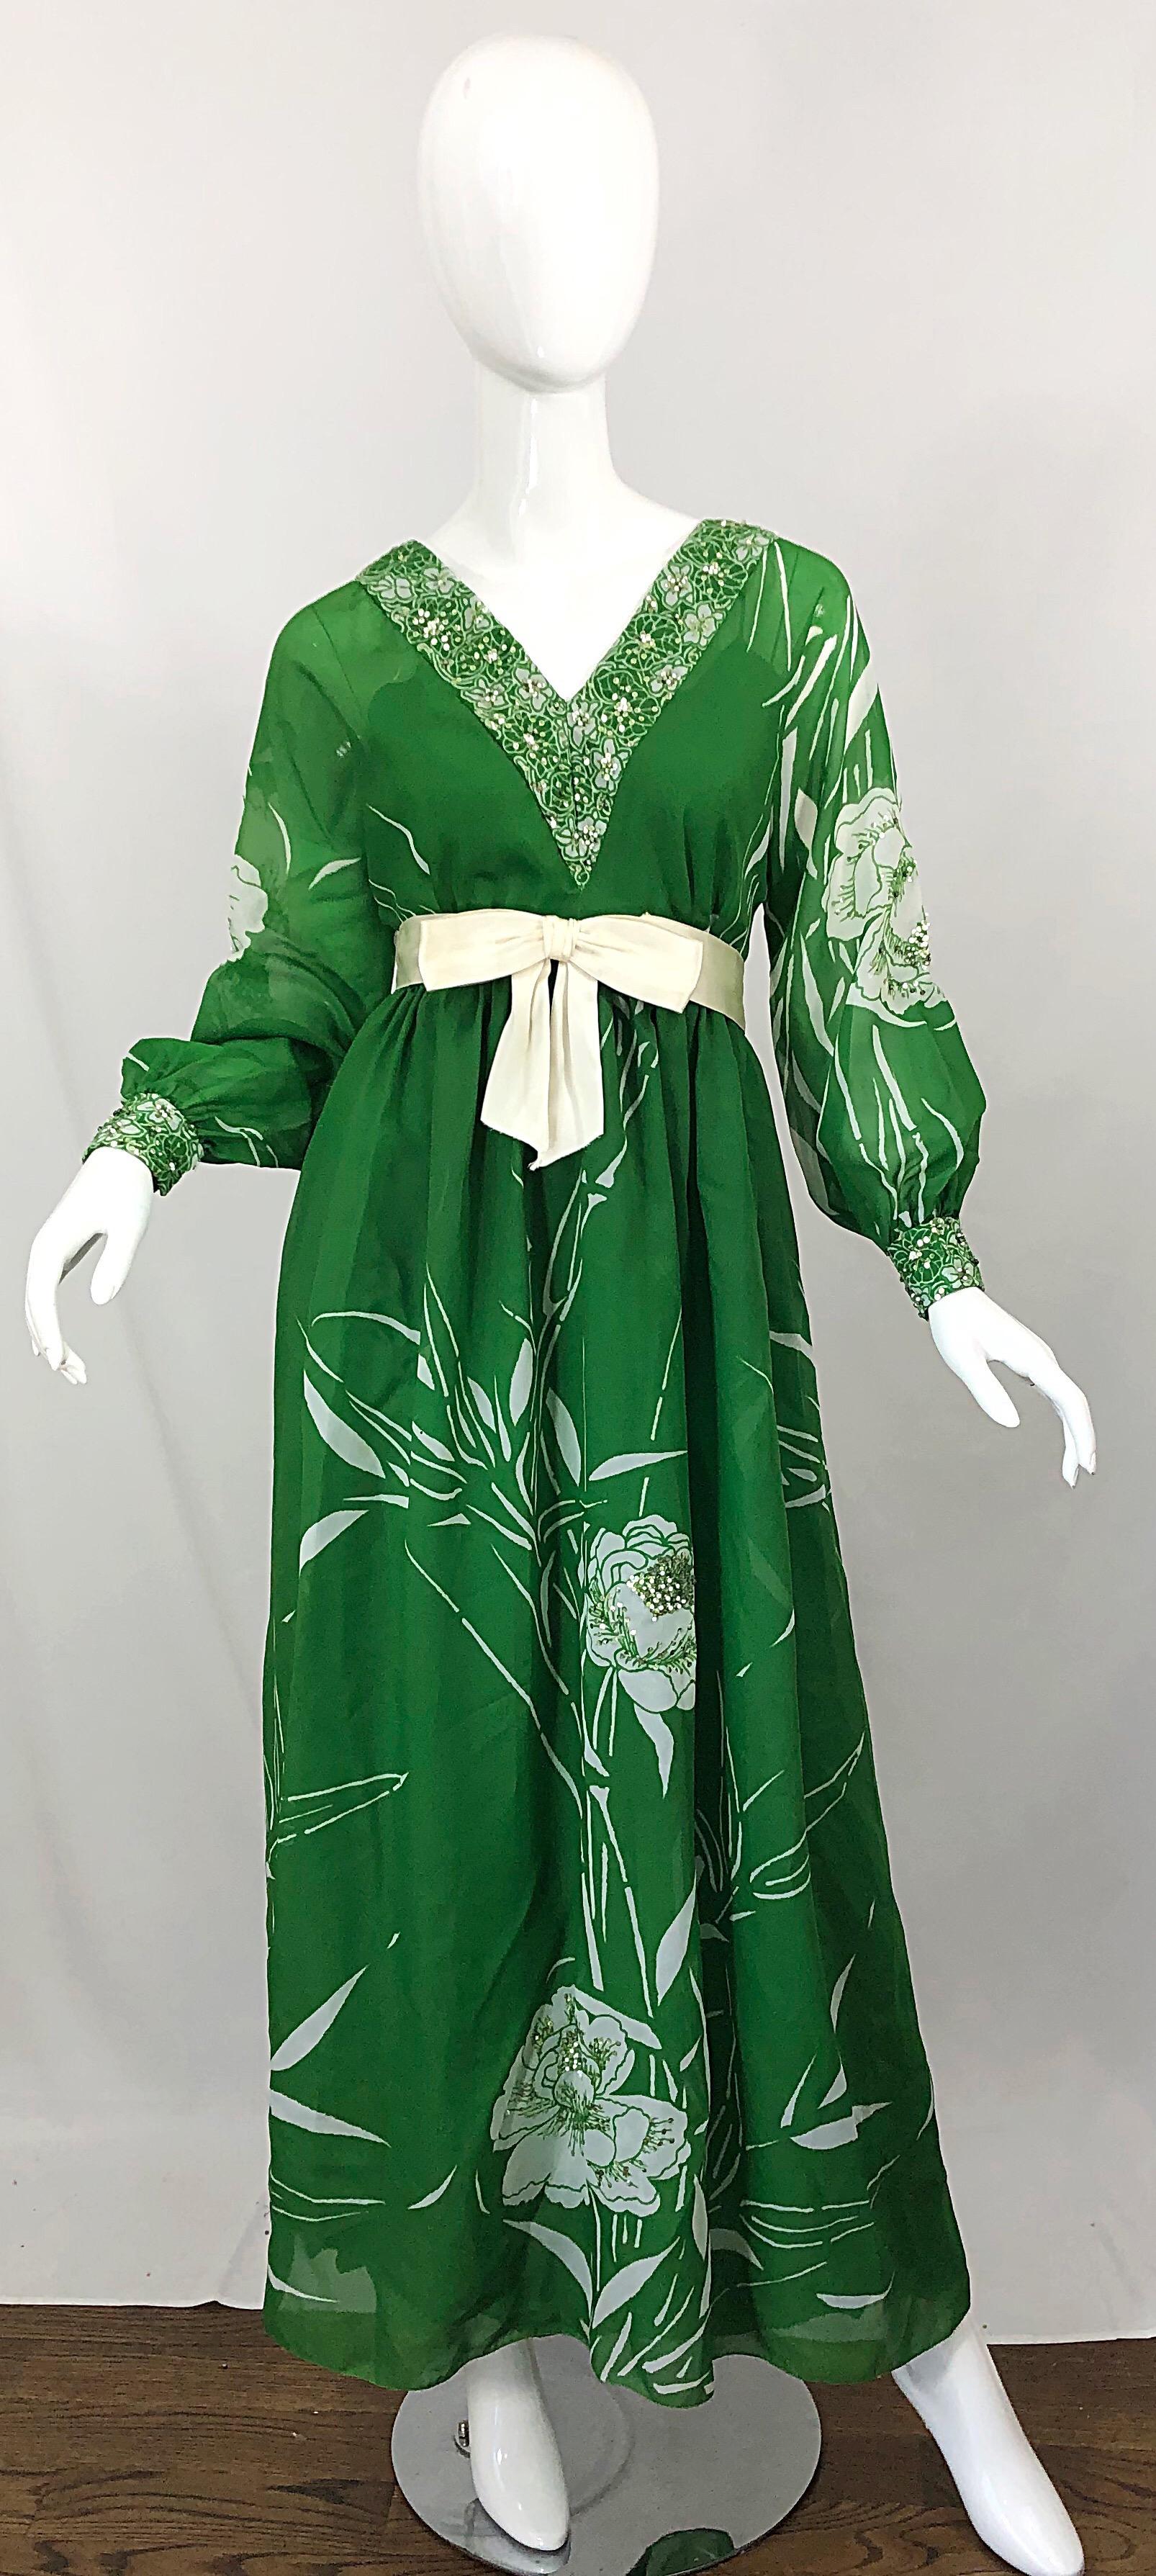 Magnifique robe / maxi robe à paillettes VICTORIA ROYAL du début des années 1970, à motifs floraux abstraits vert kelly et blanc ! Imprimé sur la robe, les manches, les bordures et les poignets. Des centaines de mini-paillettes vert clair et de